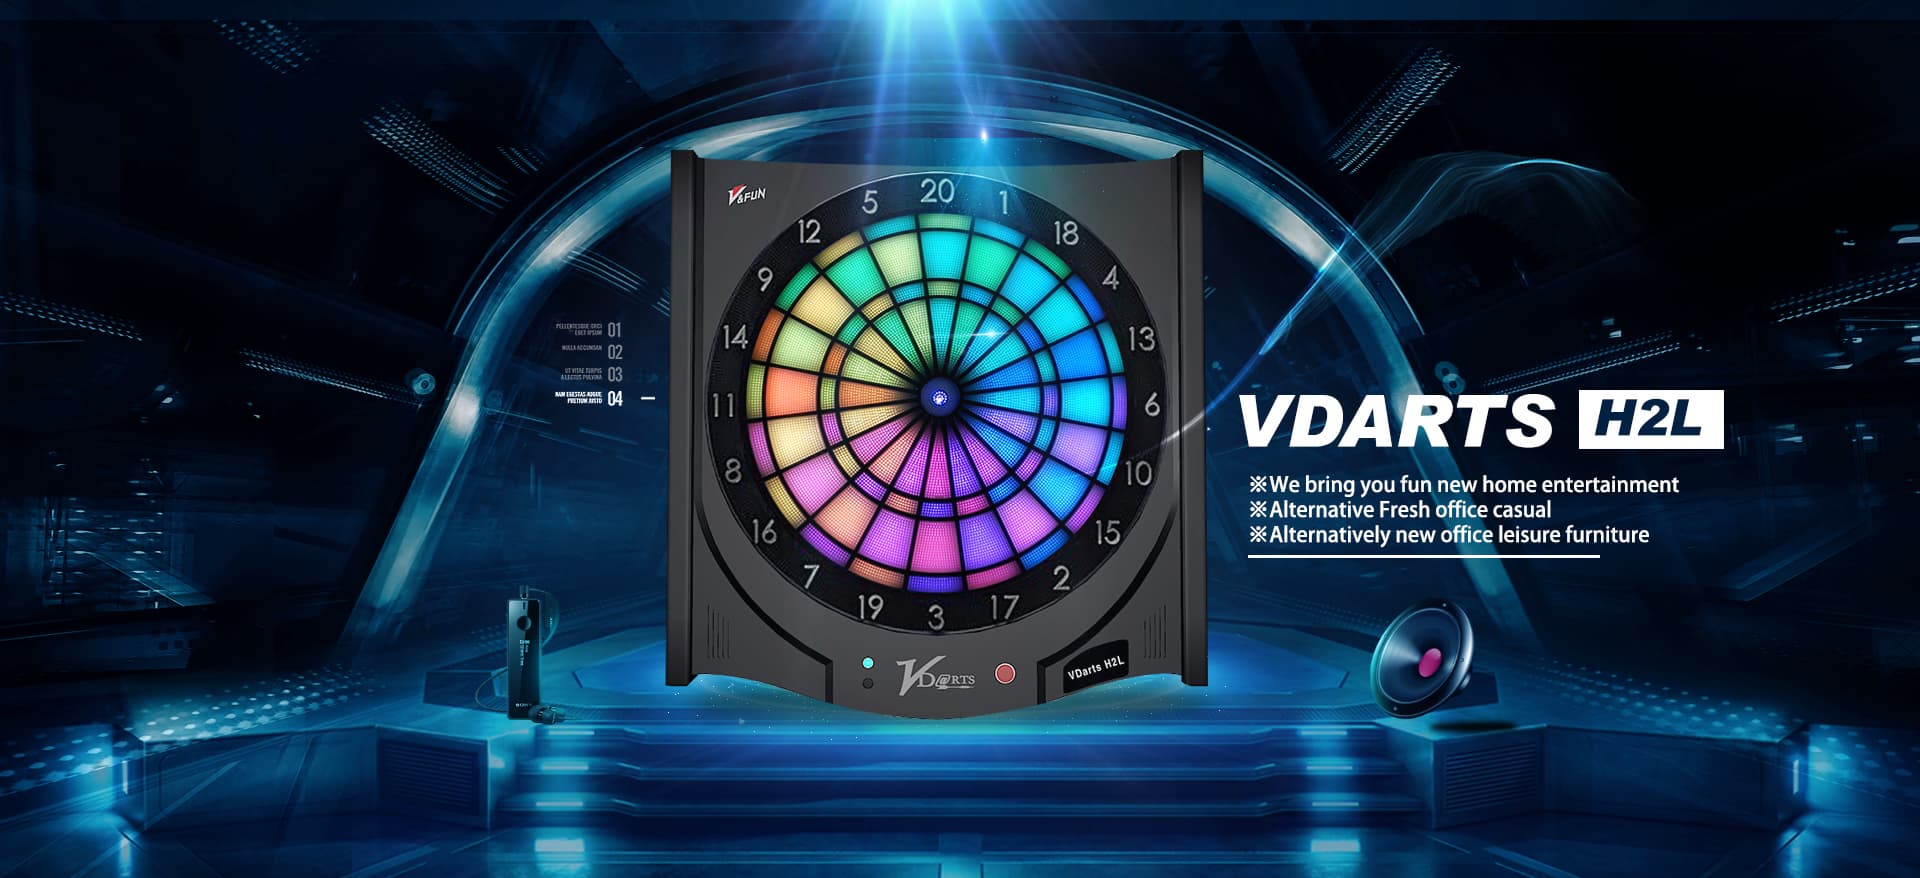 VDARTS H2L LED Global Online Dartboard | tradekorea